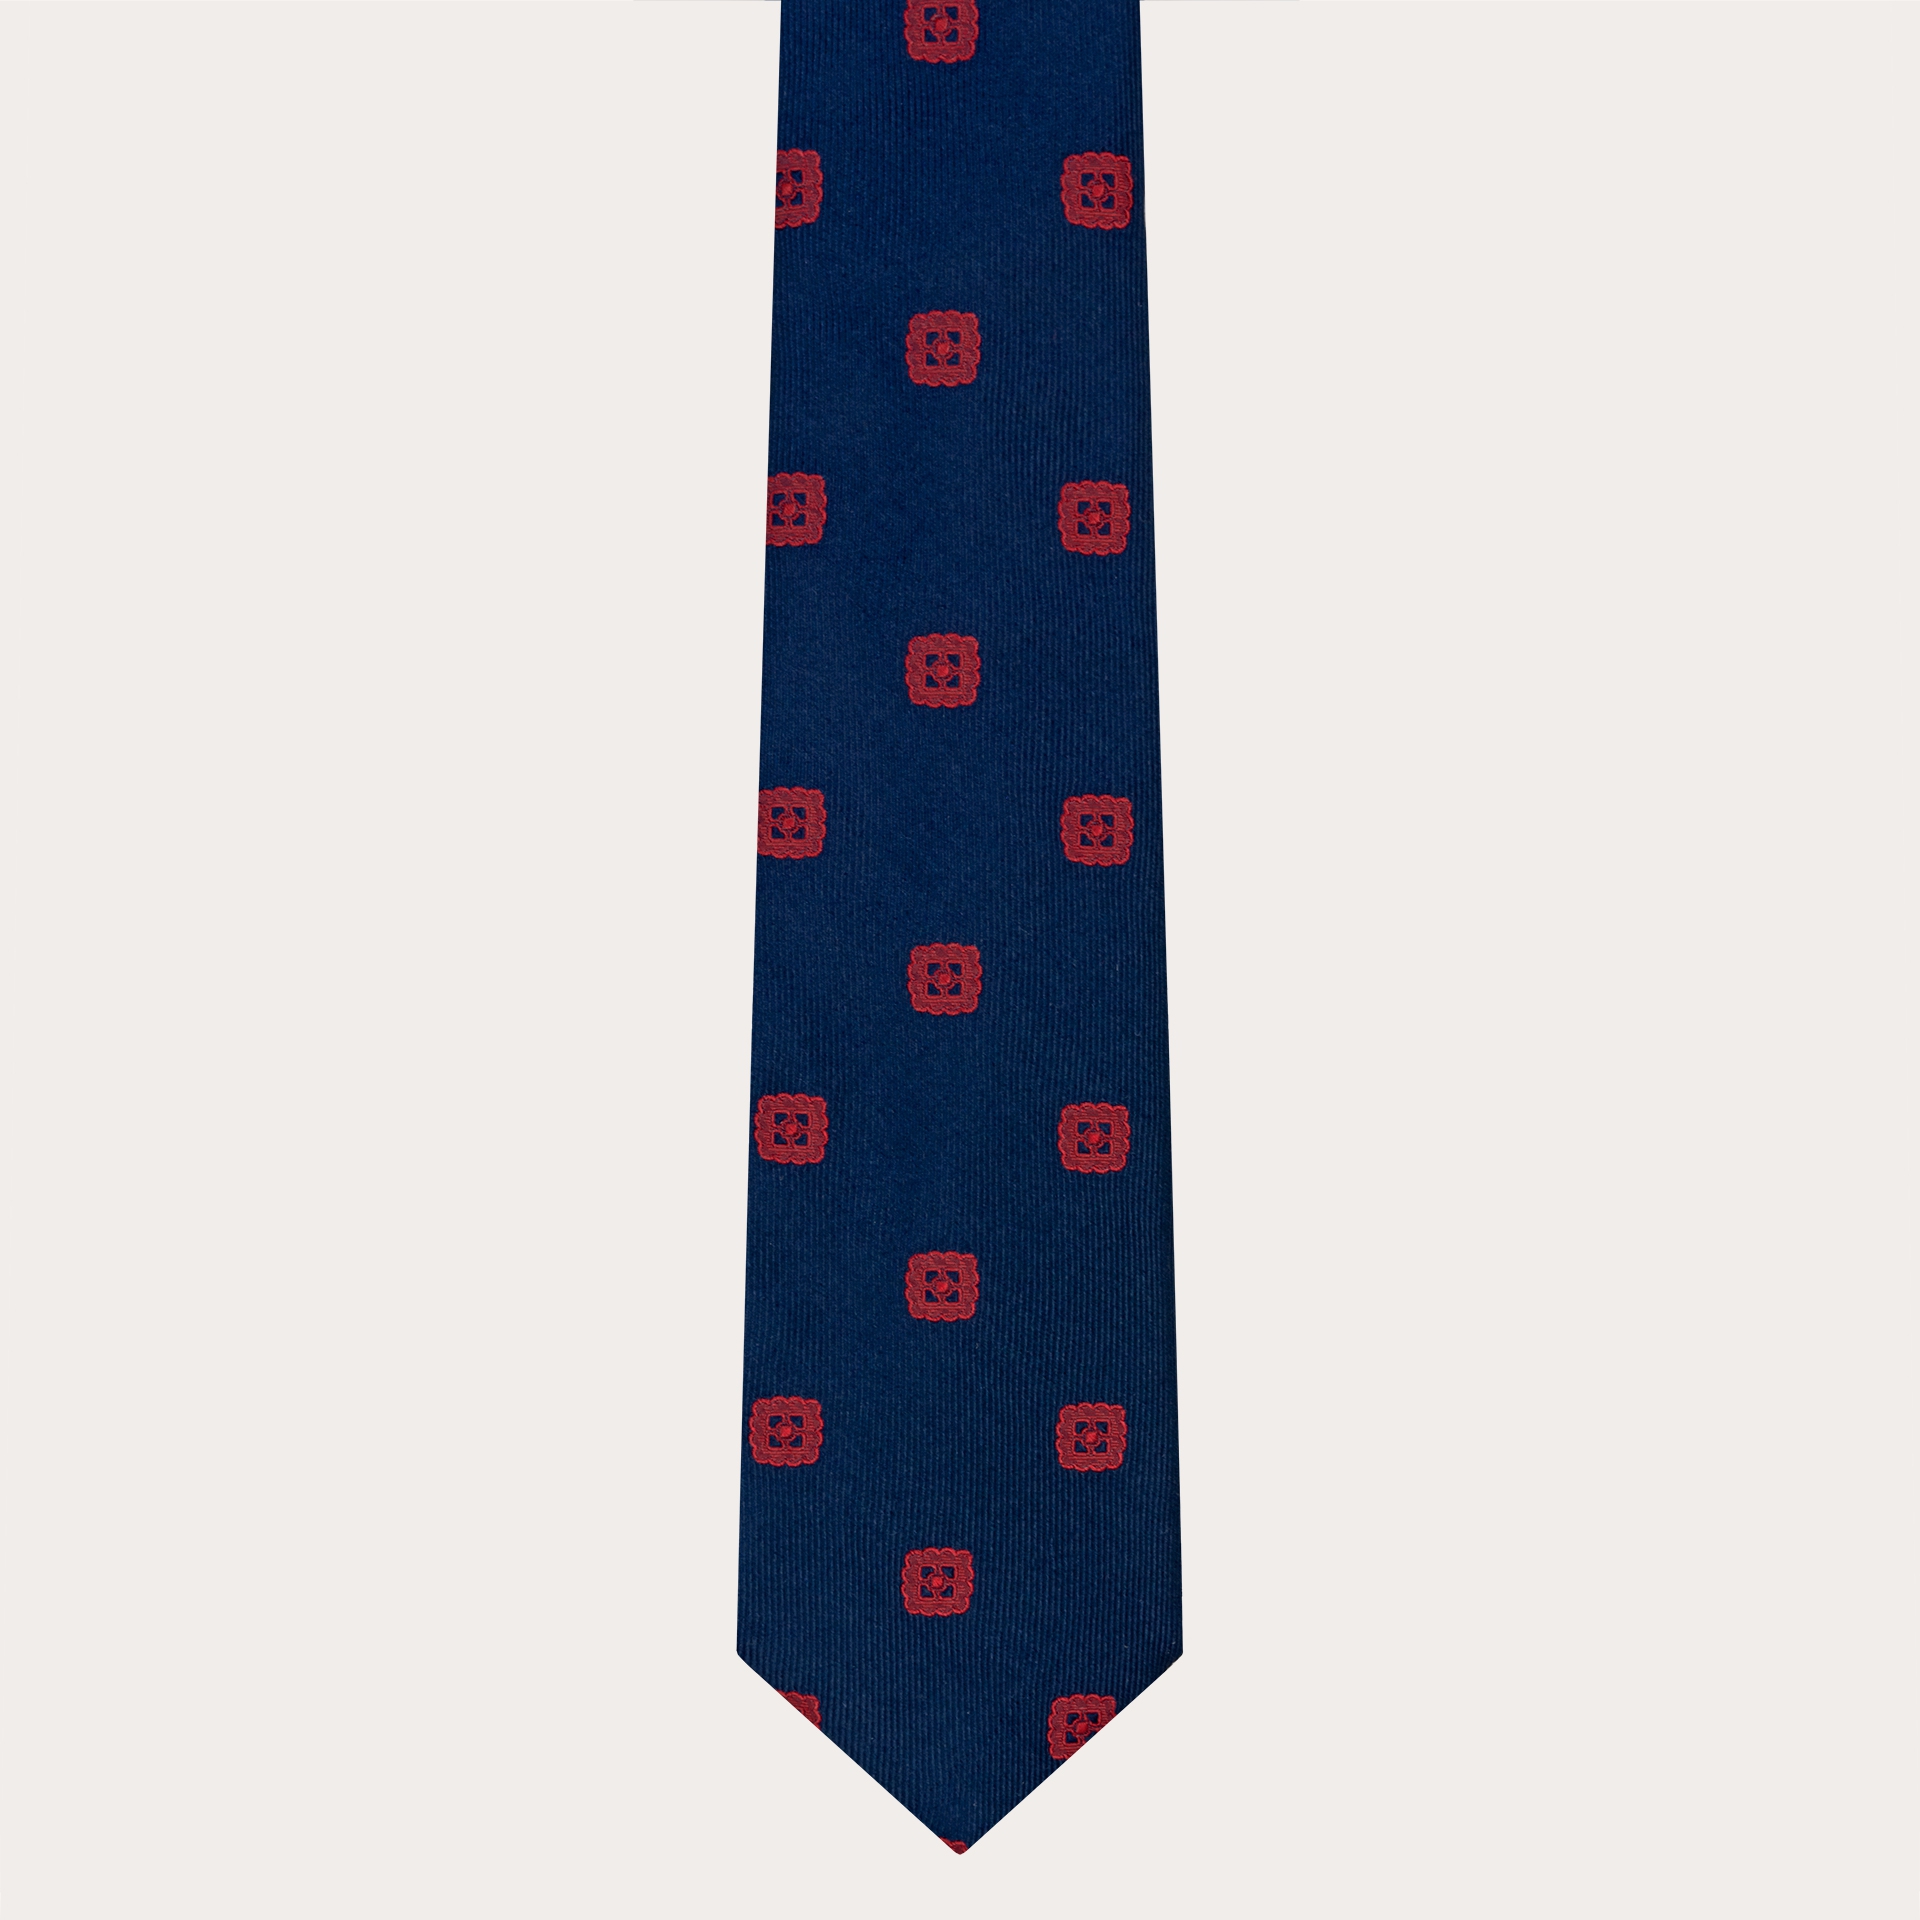 Corbata elegante en jacquard de seda azul con bordado rojo